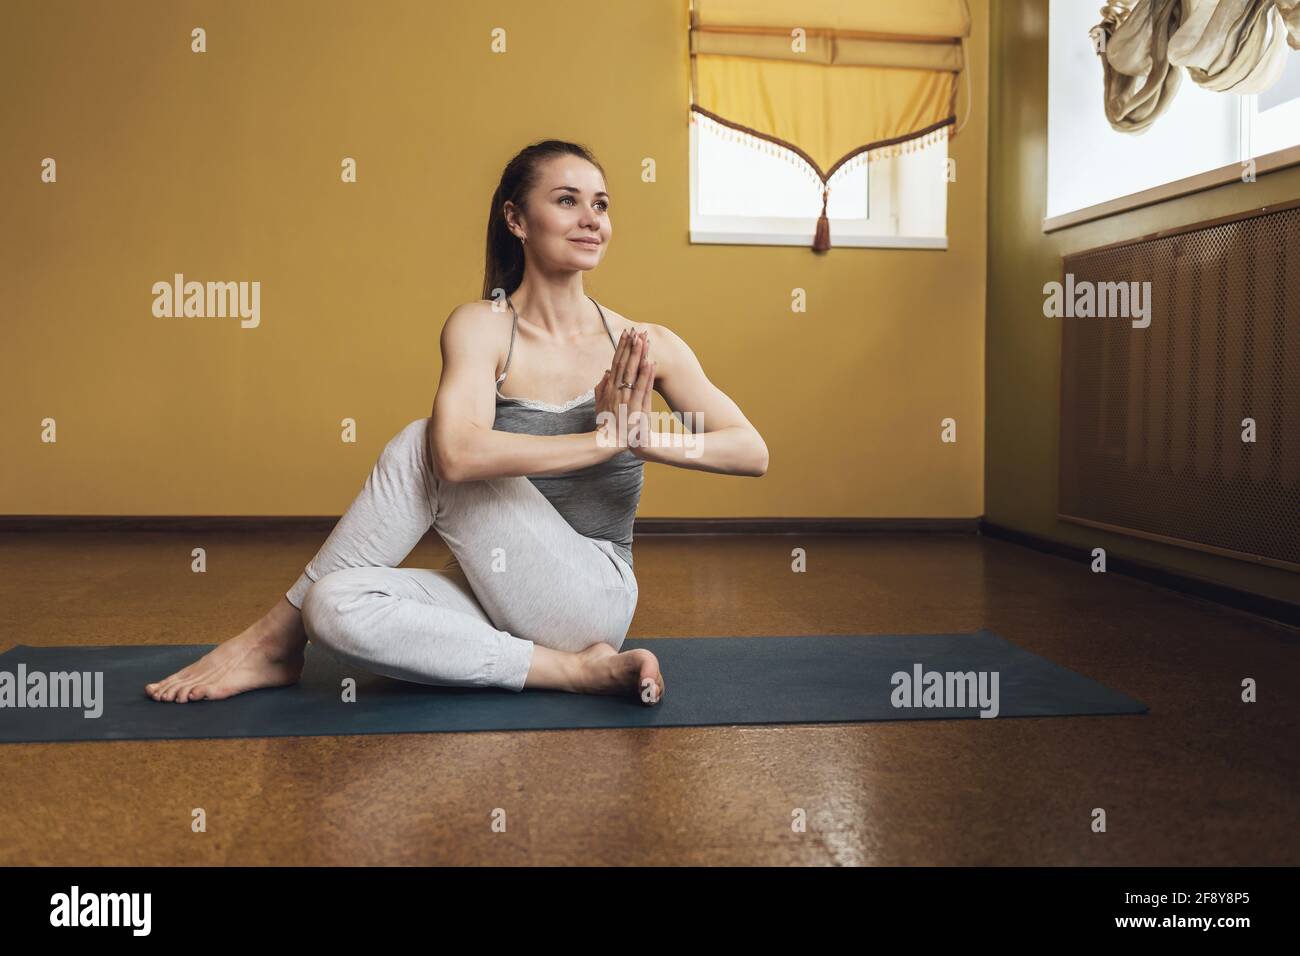 Grey yoga pants immagini e fotografie stock ad alta risoluzione - Alamy